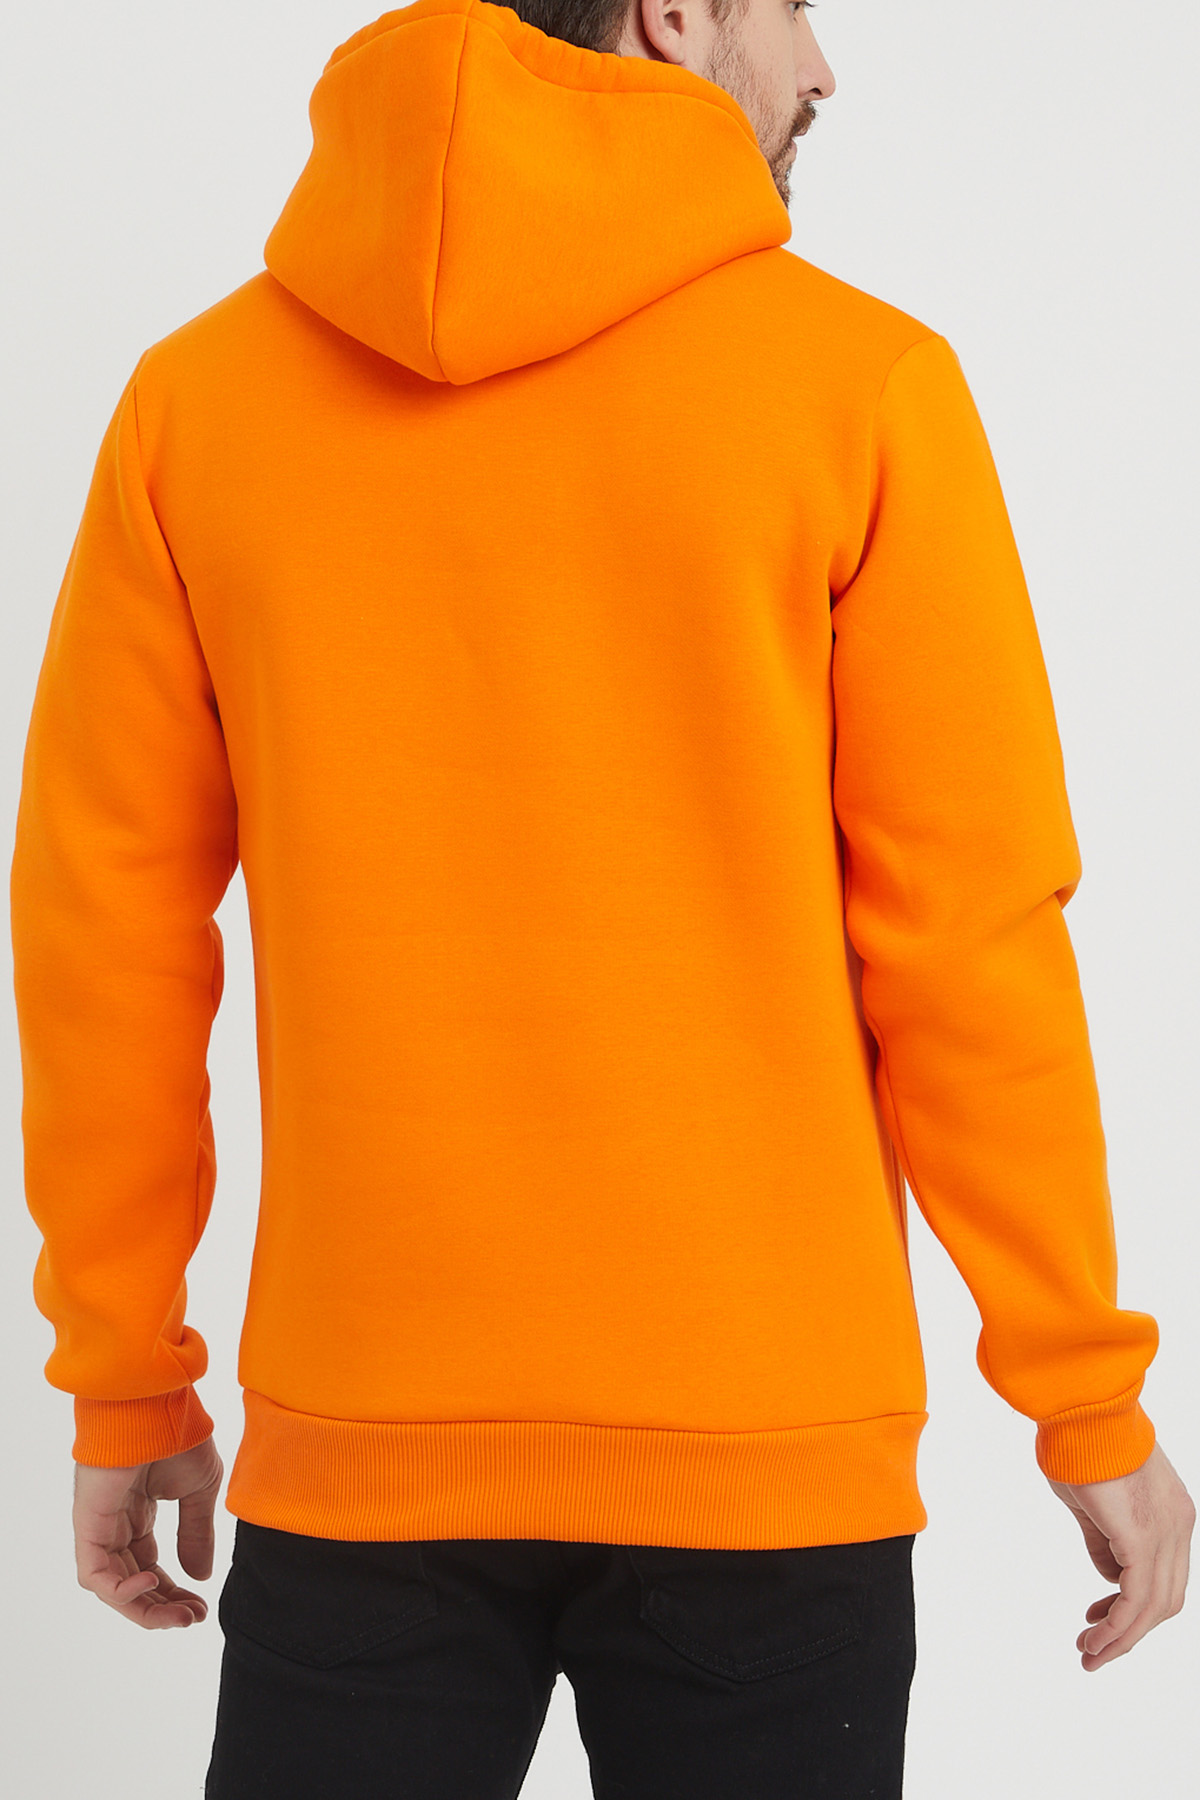 Turuncu Baskılı Sweatshirt 1KXE8-44365-11 - 4